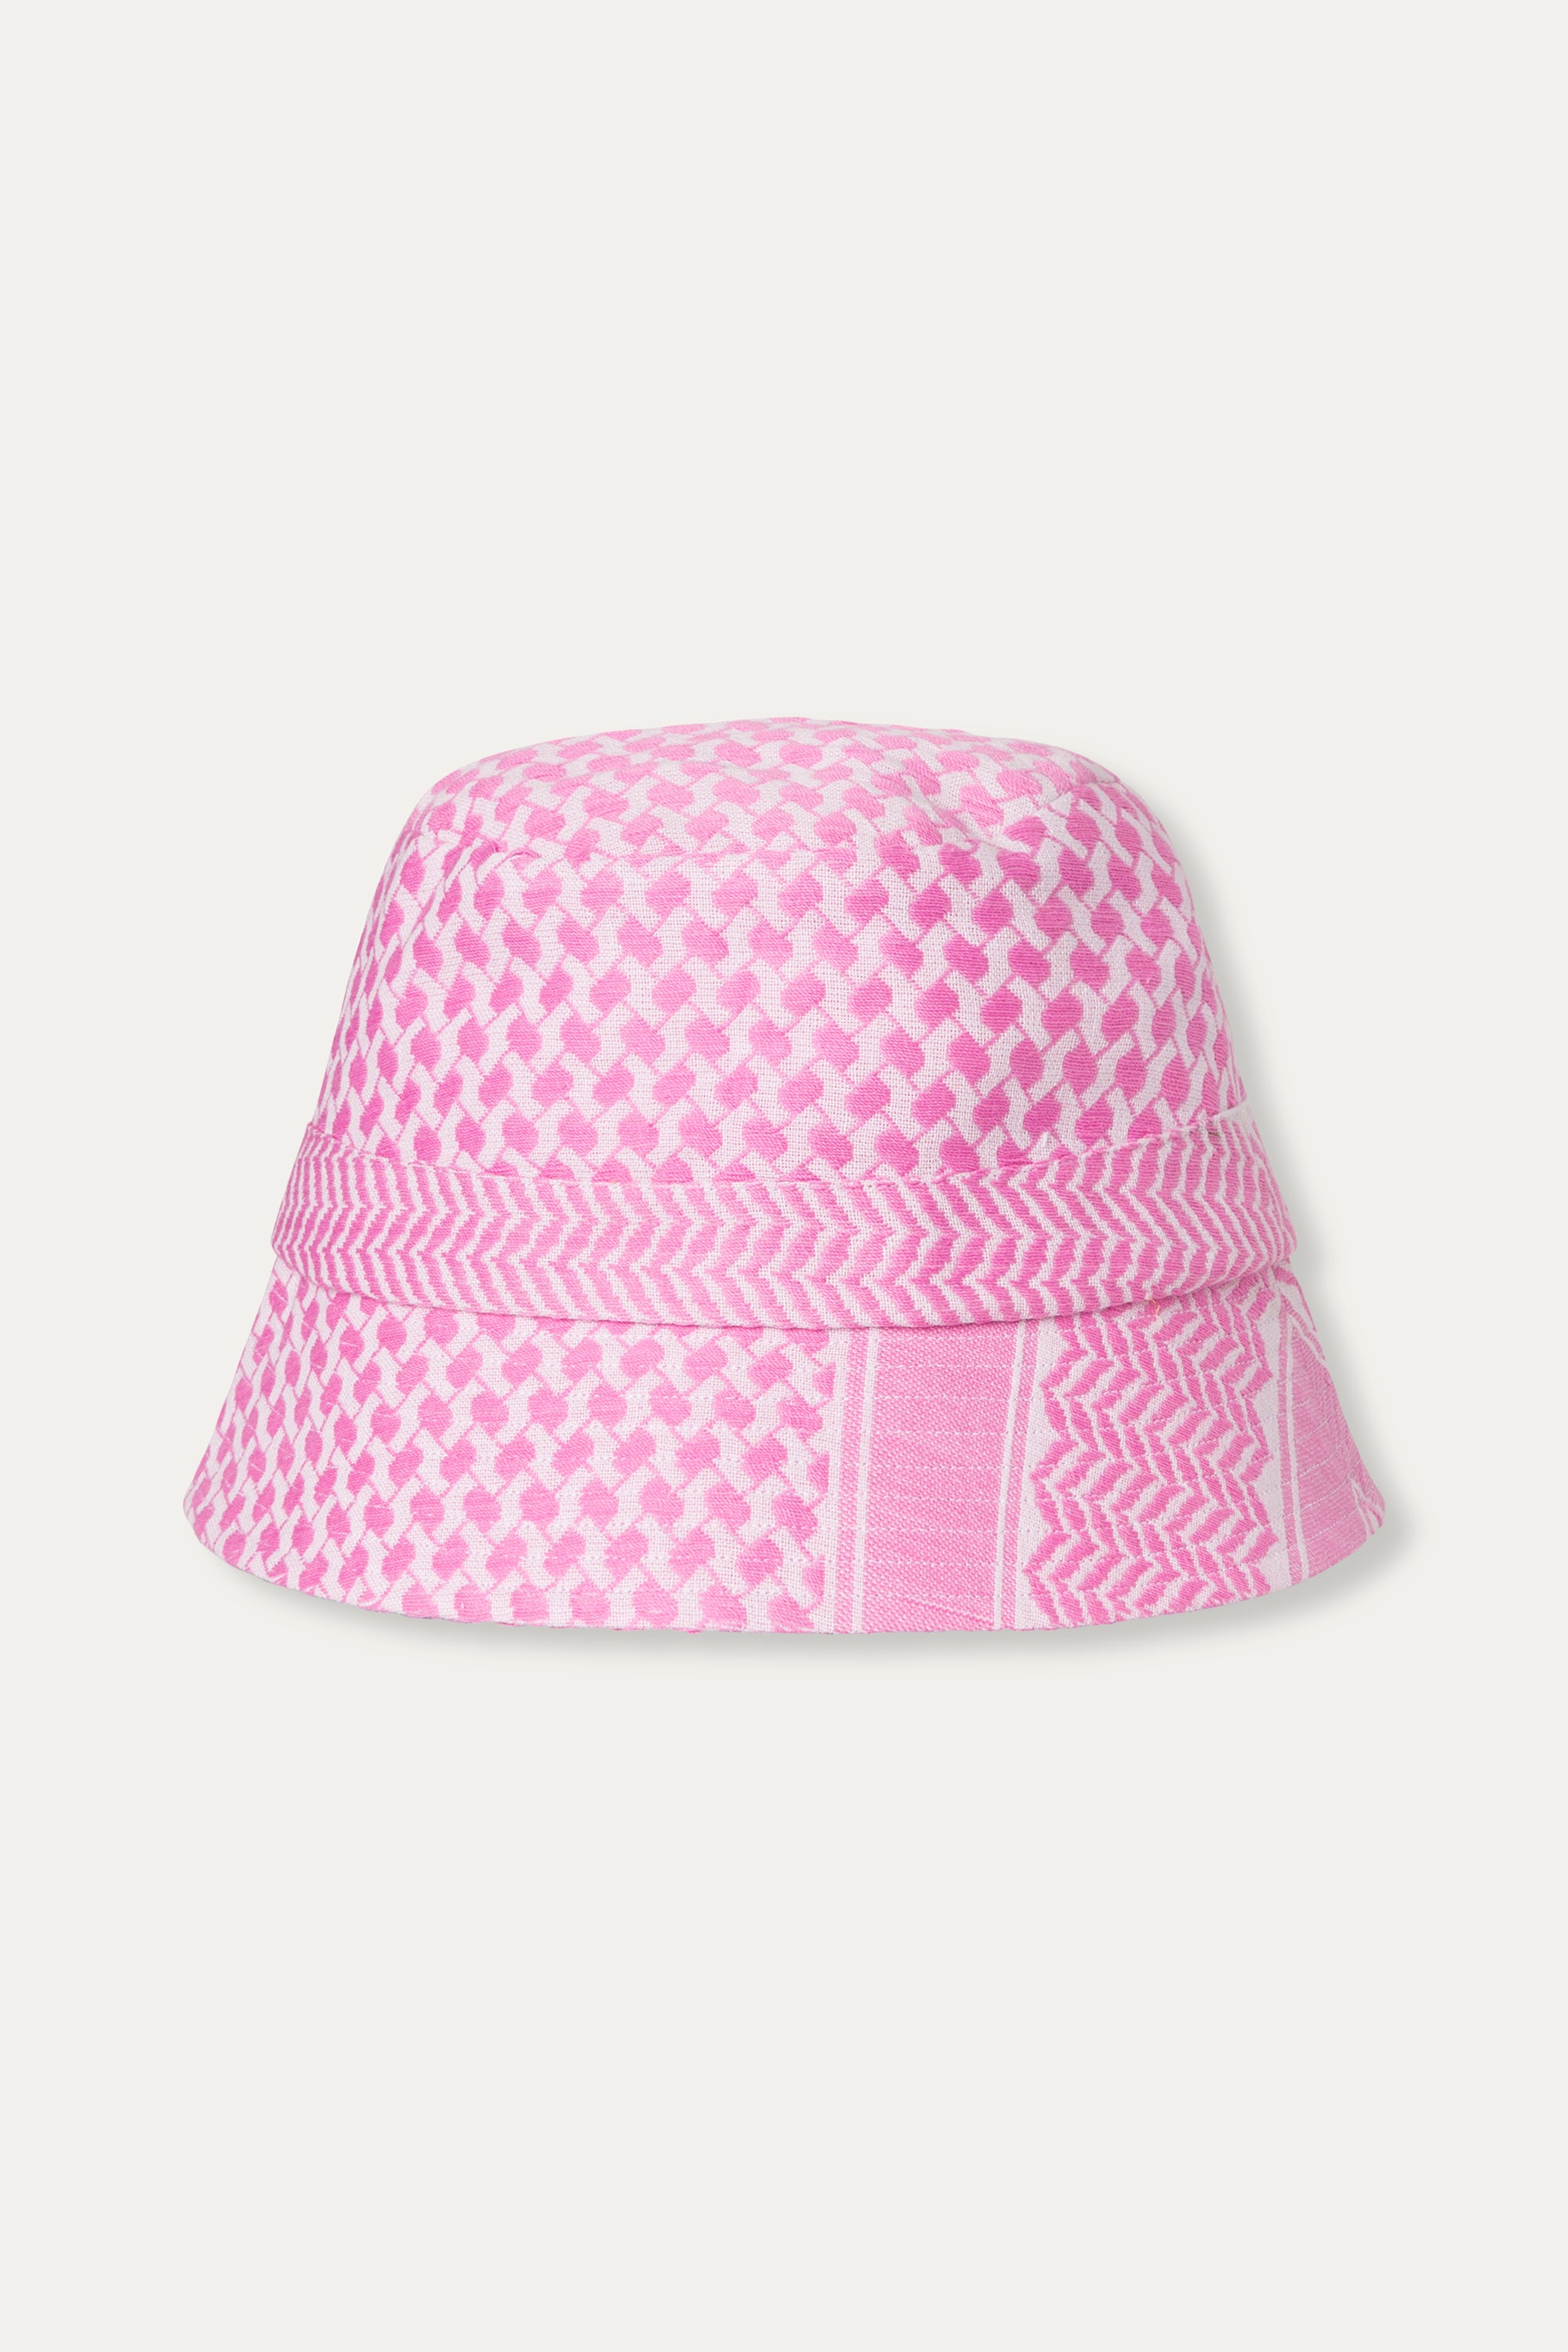 SUMMERY Copenhagen Mucca Bucket Hat Accessories 417 Lavender Fog/Super Pink